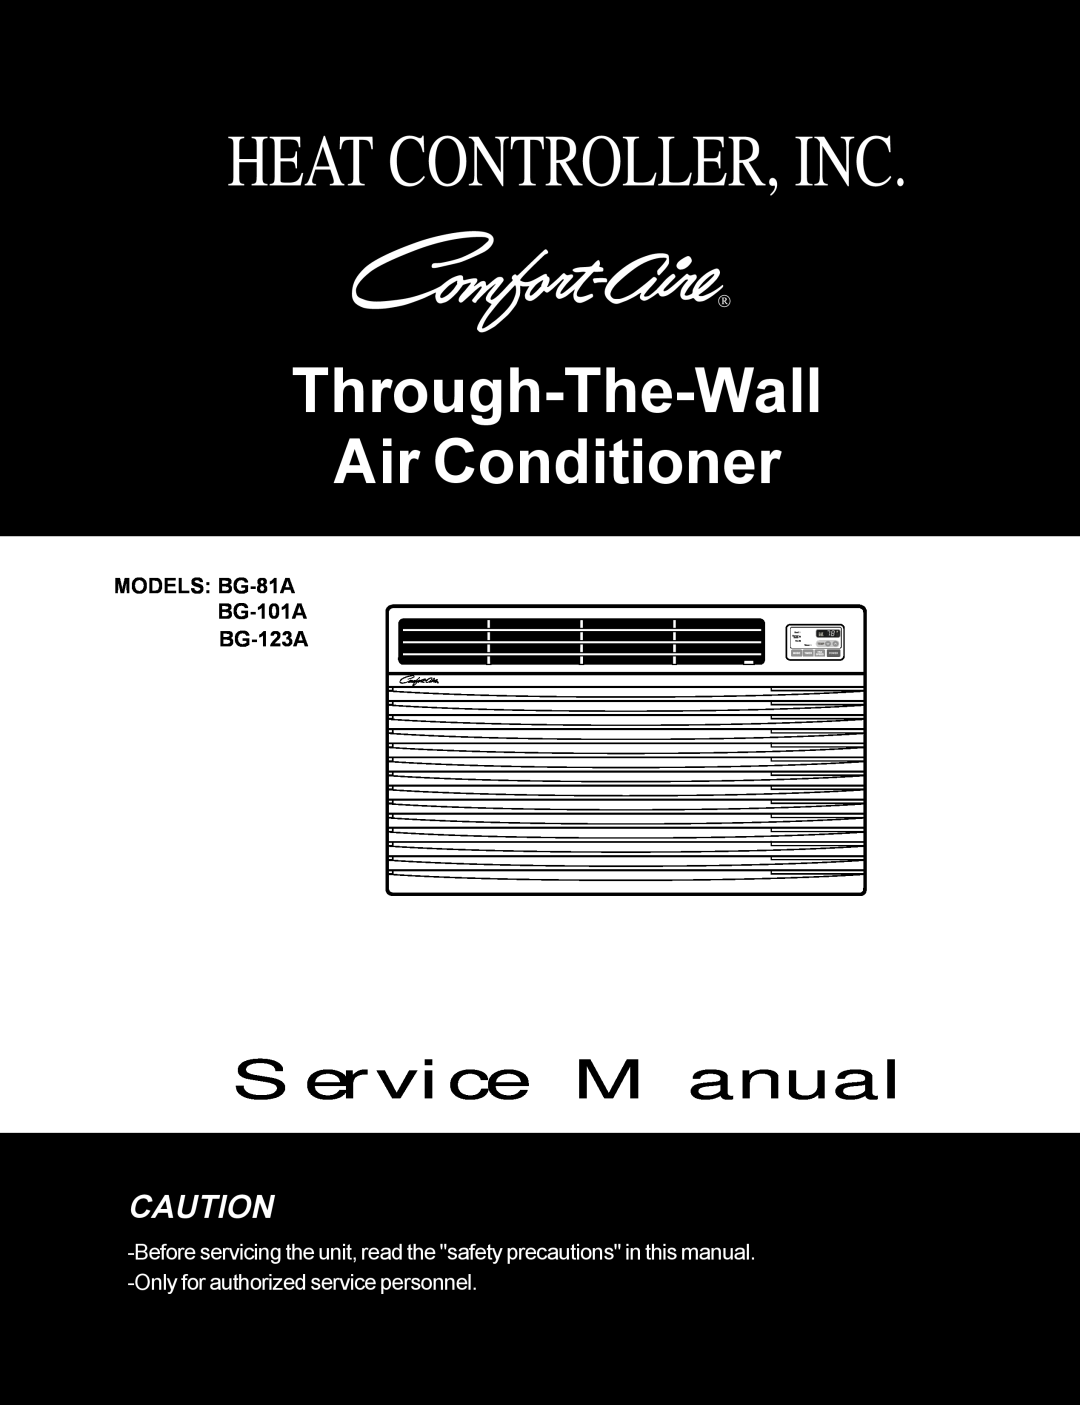 Heat Controller BG-123A, BG-81A, BG-101A service manual Heat Controller, Inc, Through-The-Wall Air Conditioner 